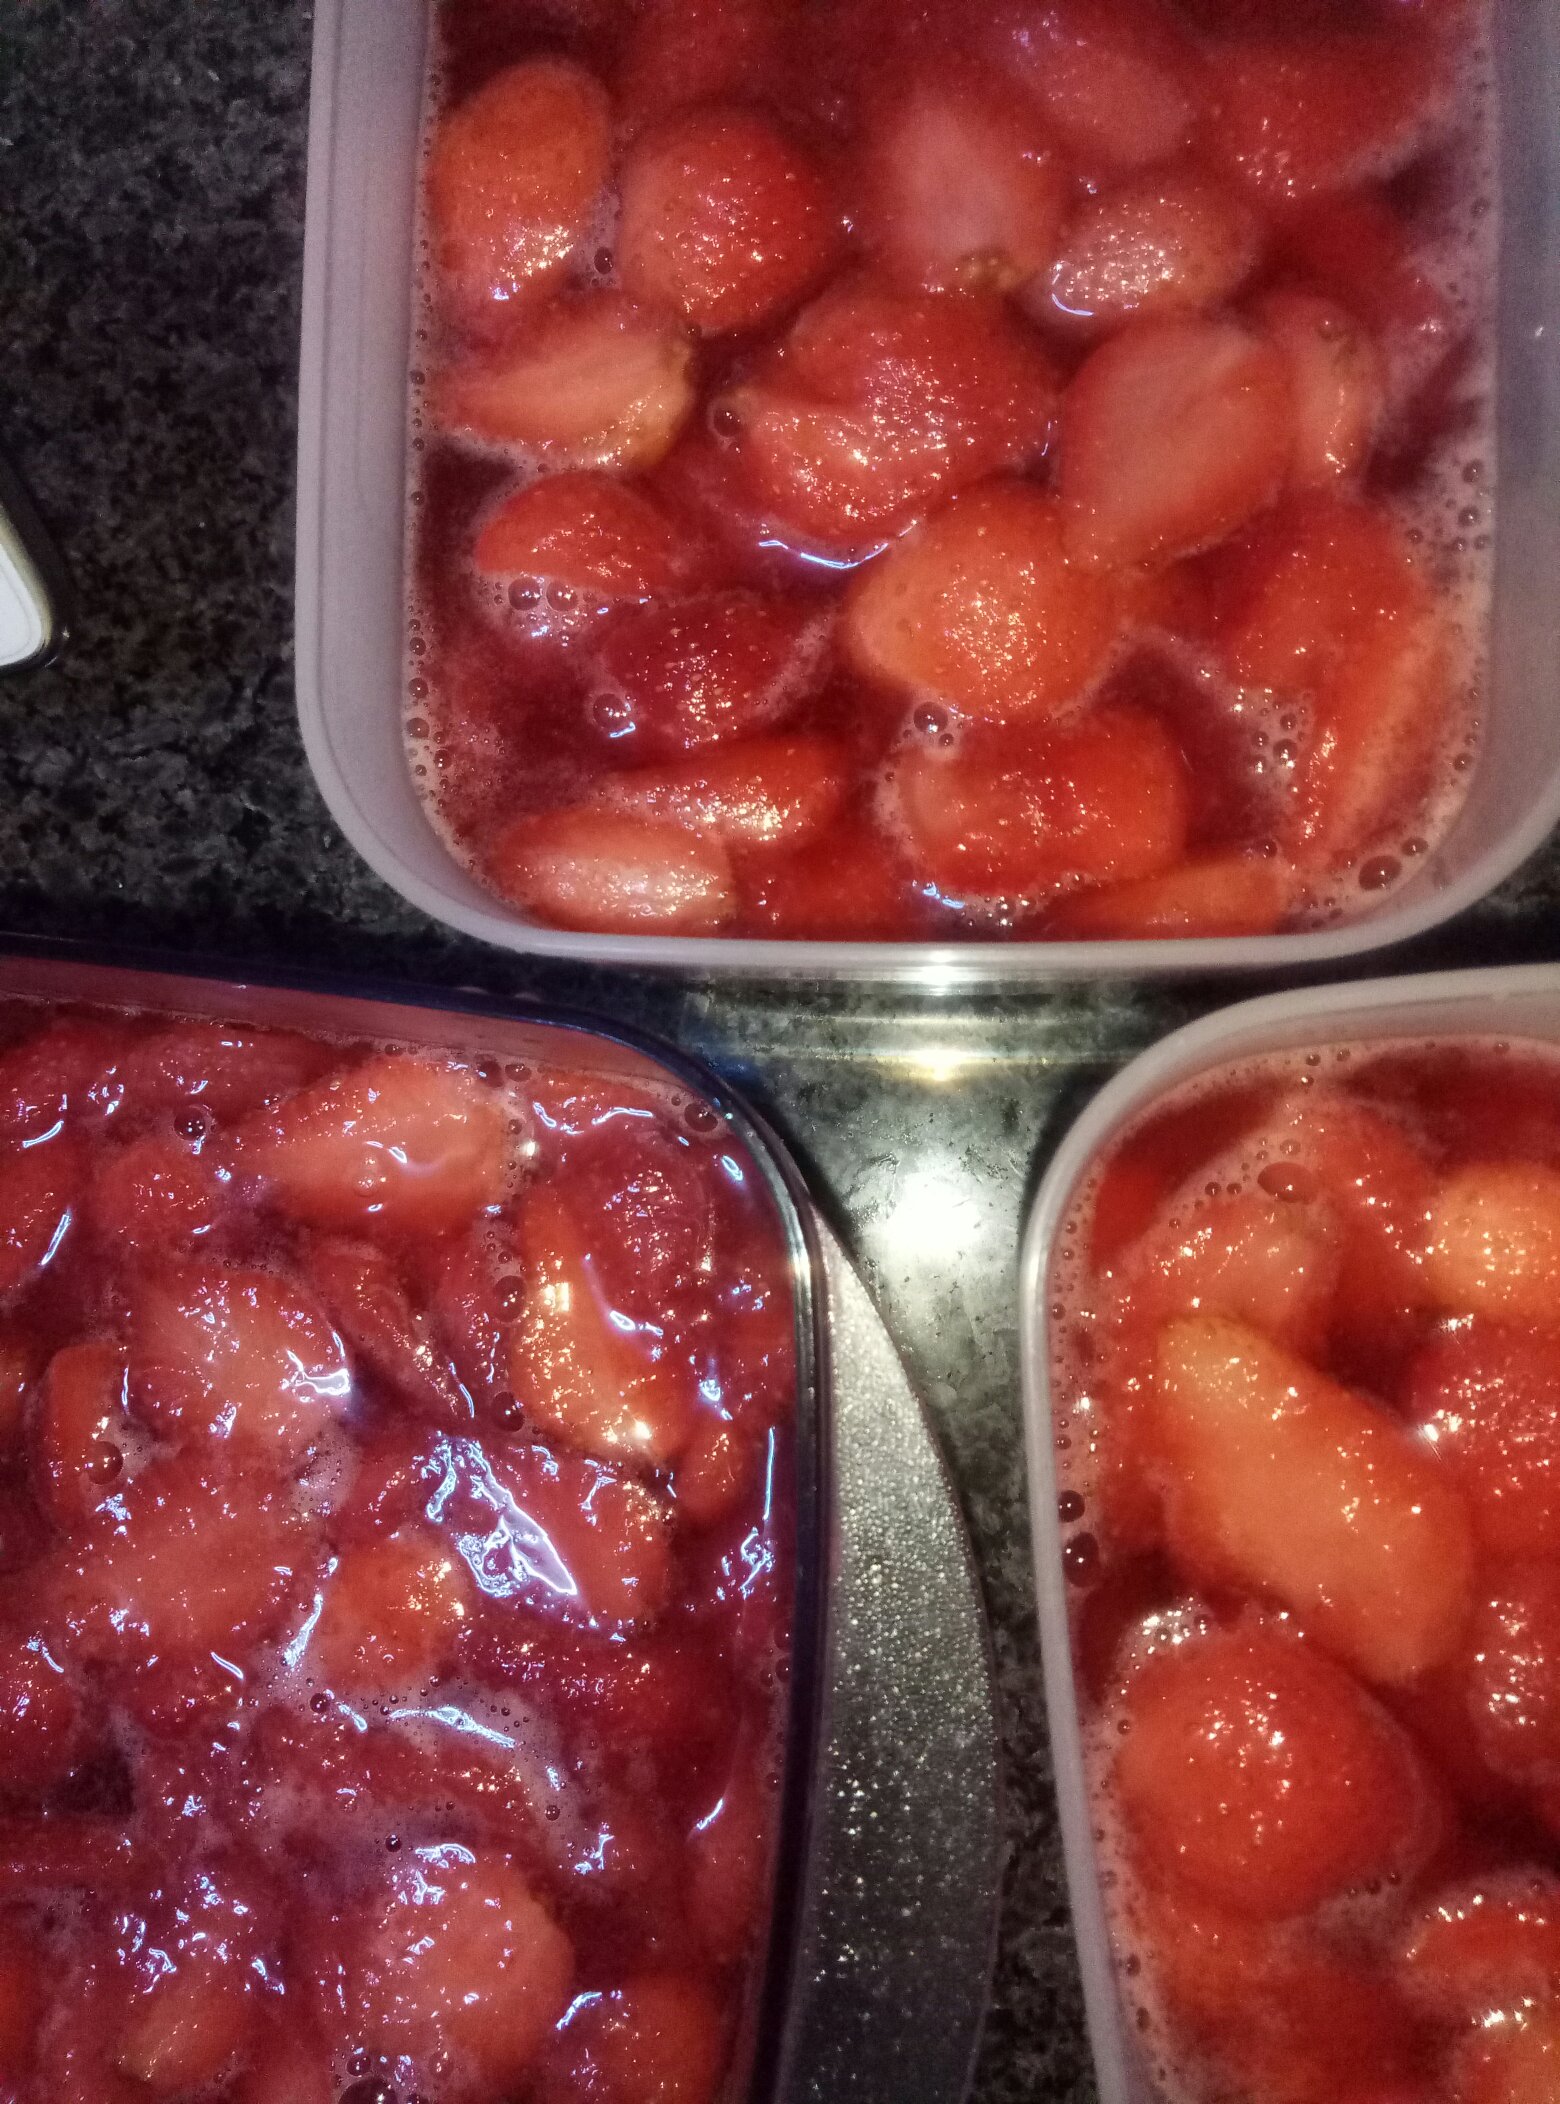 冻草莓